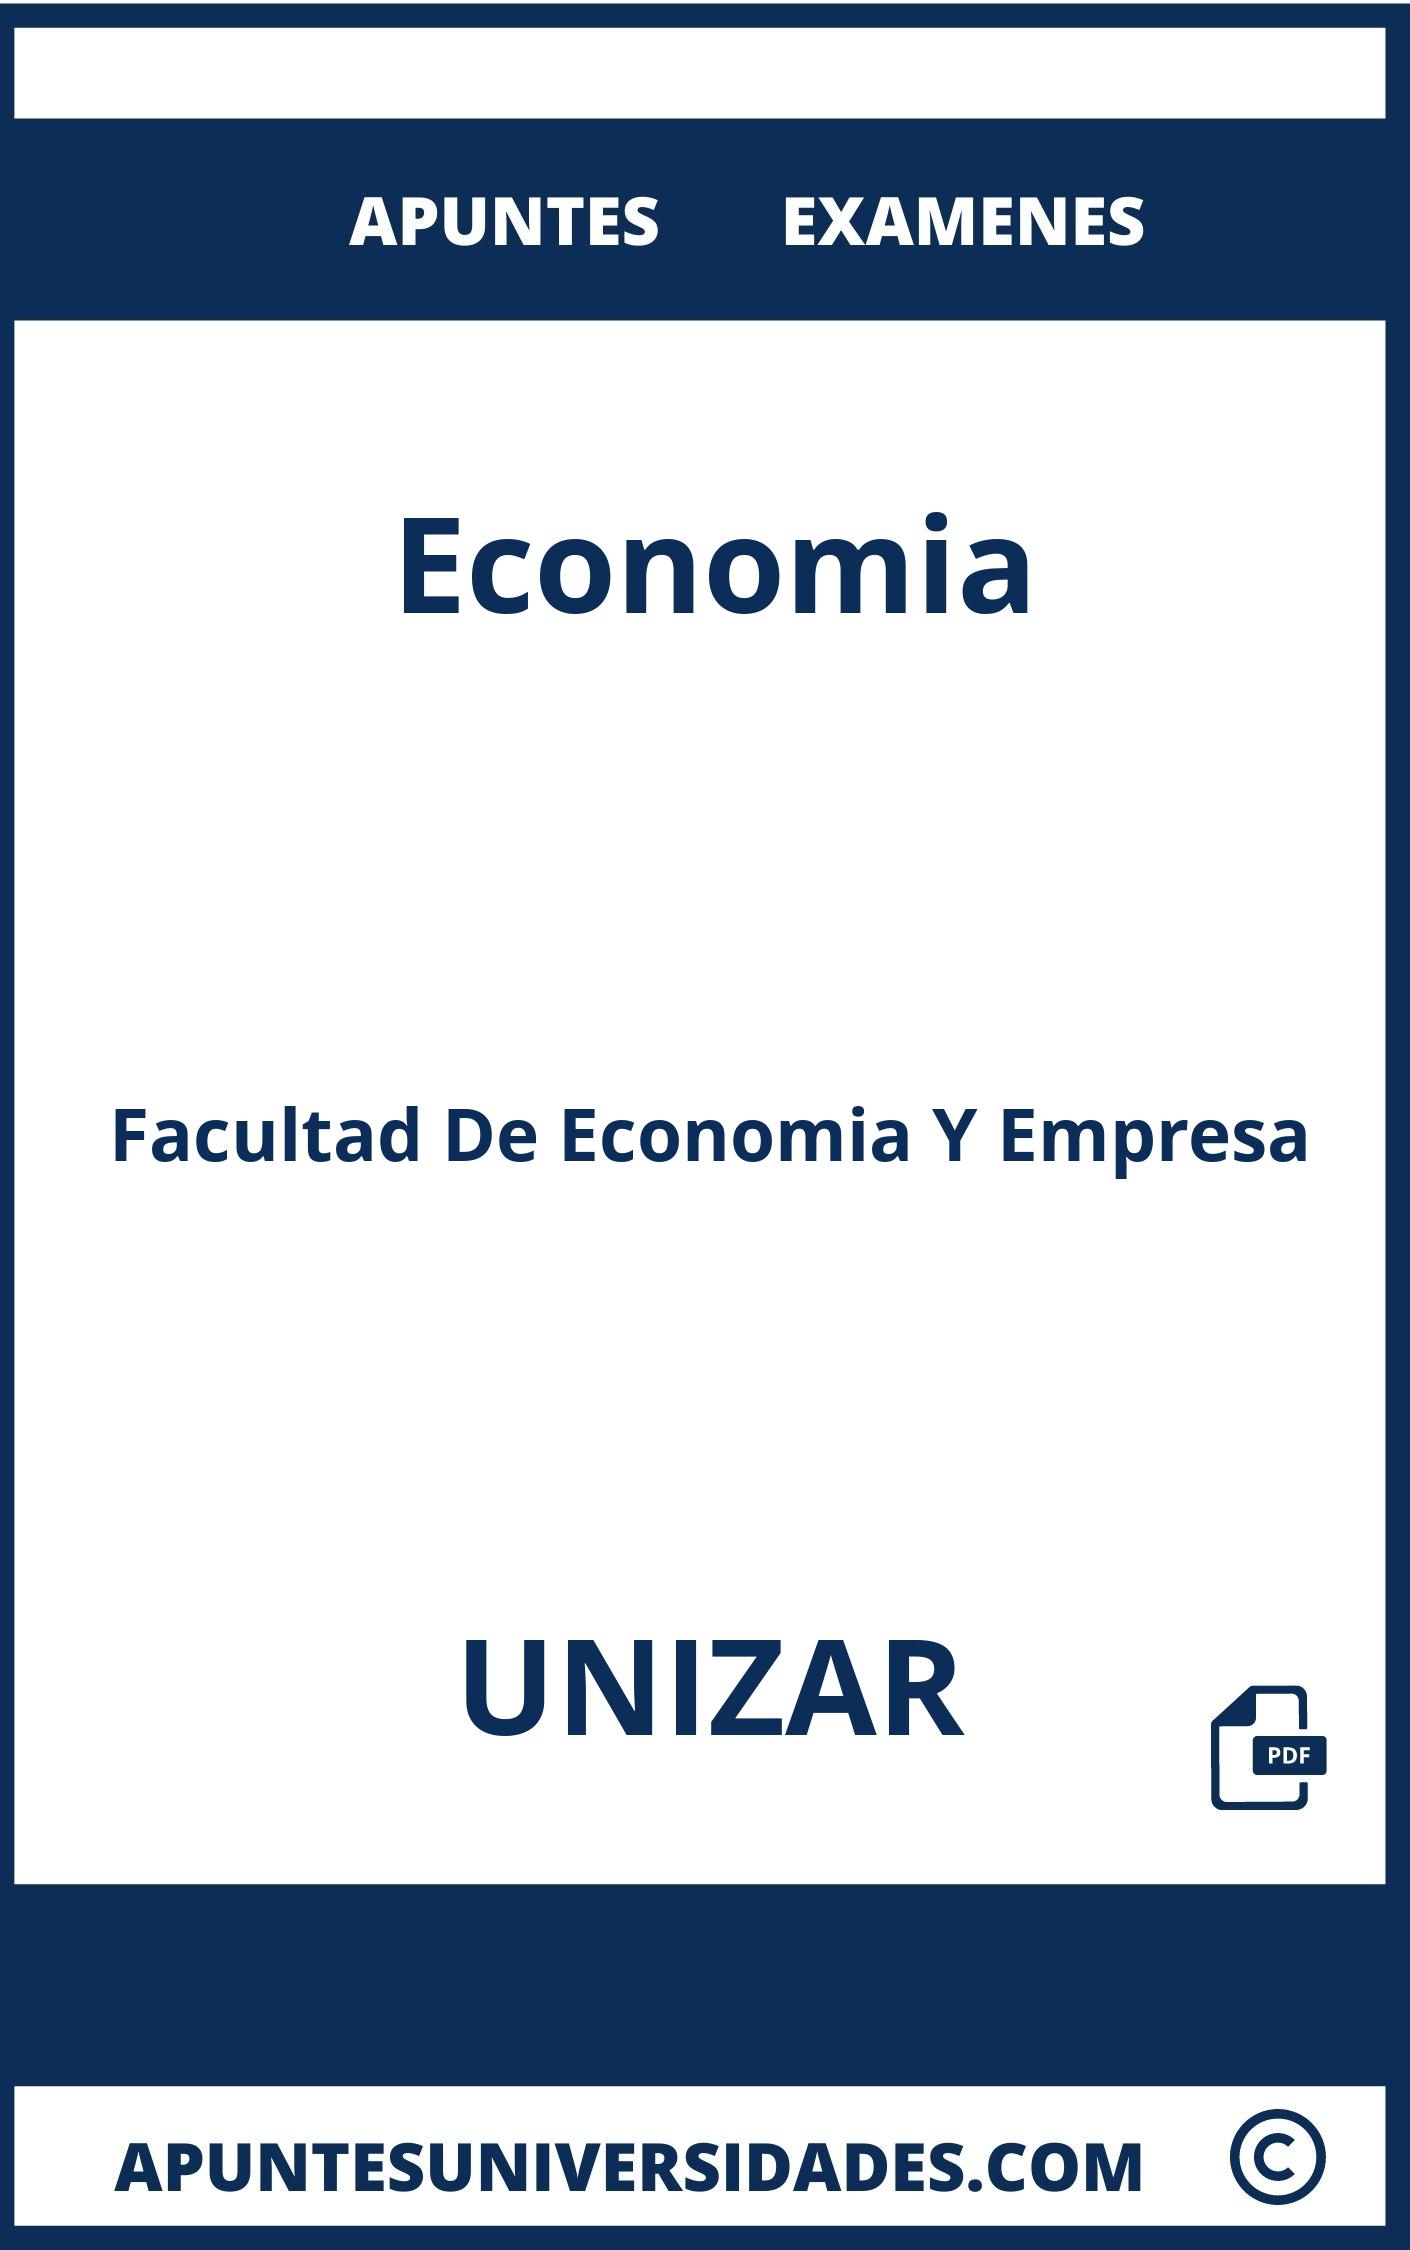 Examenes y Apuntes Economia UNIZAR